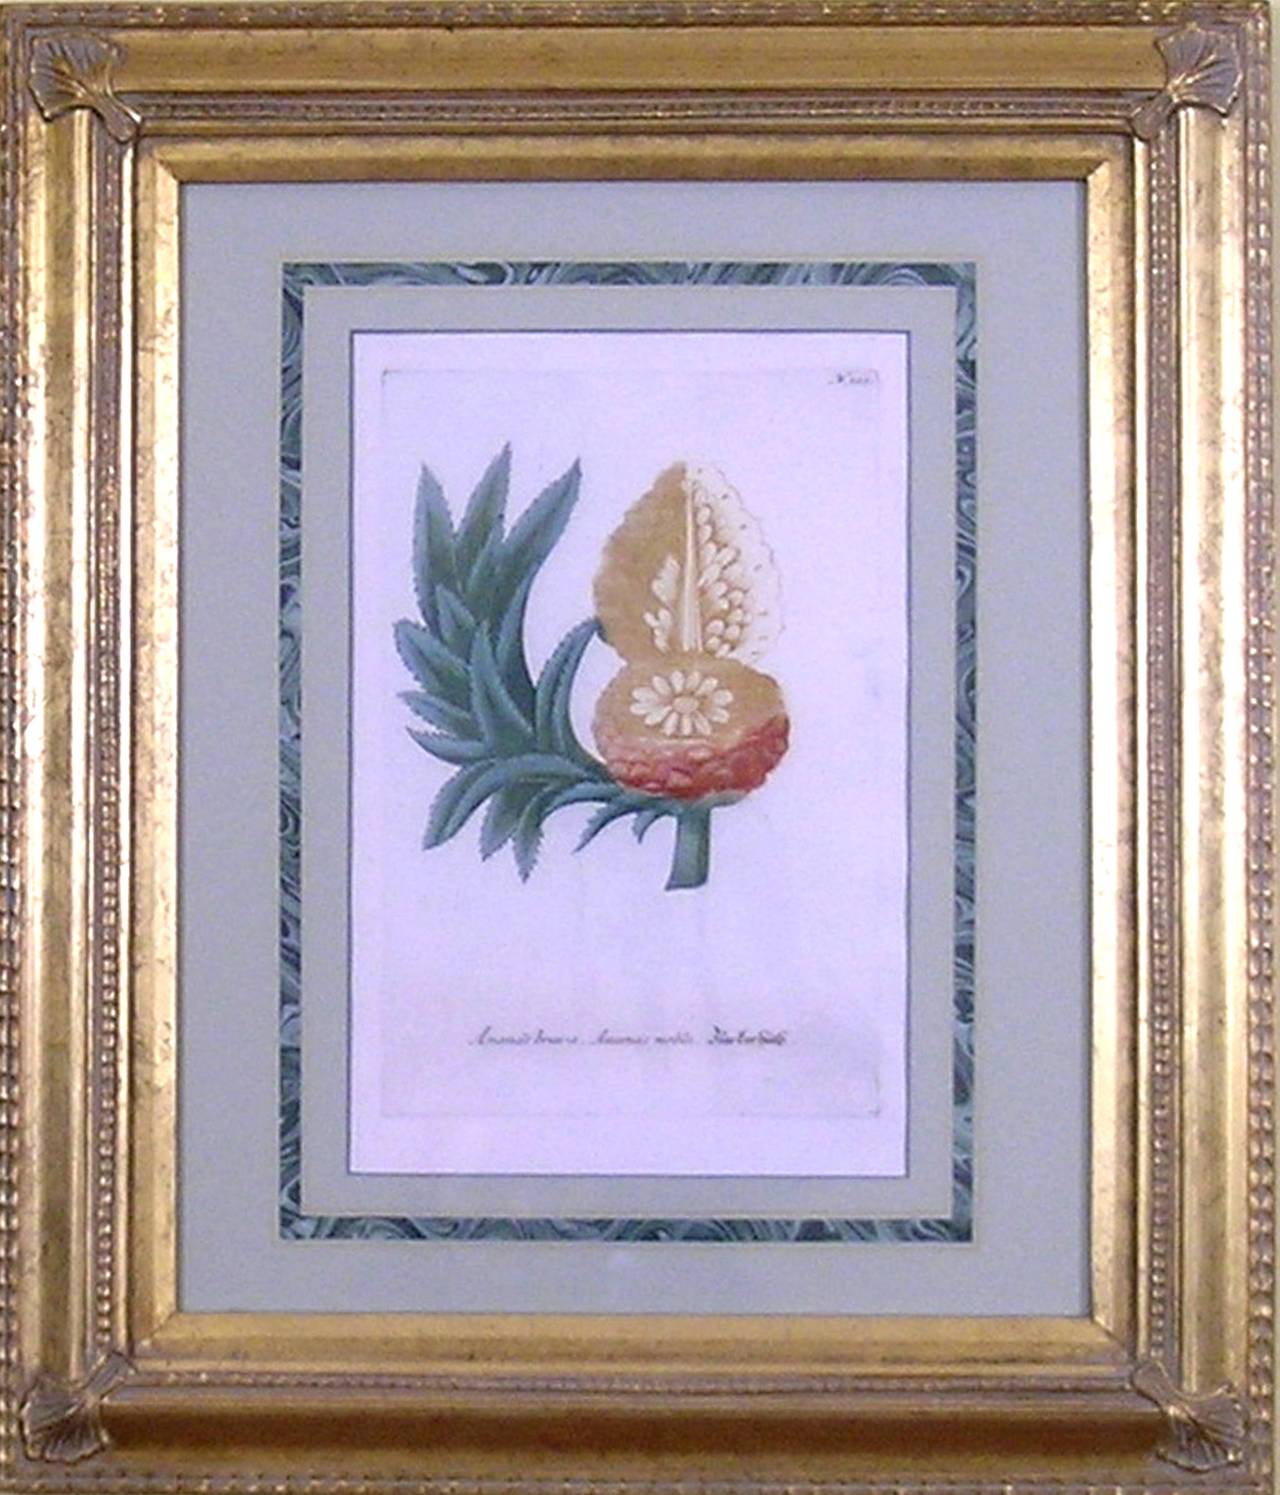 Ananas Brava.  Ananas Noblis - Print by Johann Wilhelm Weinmann